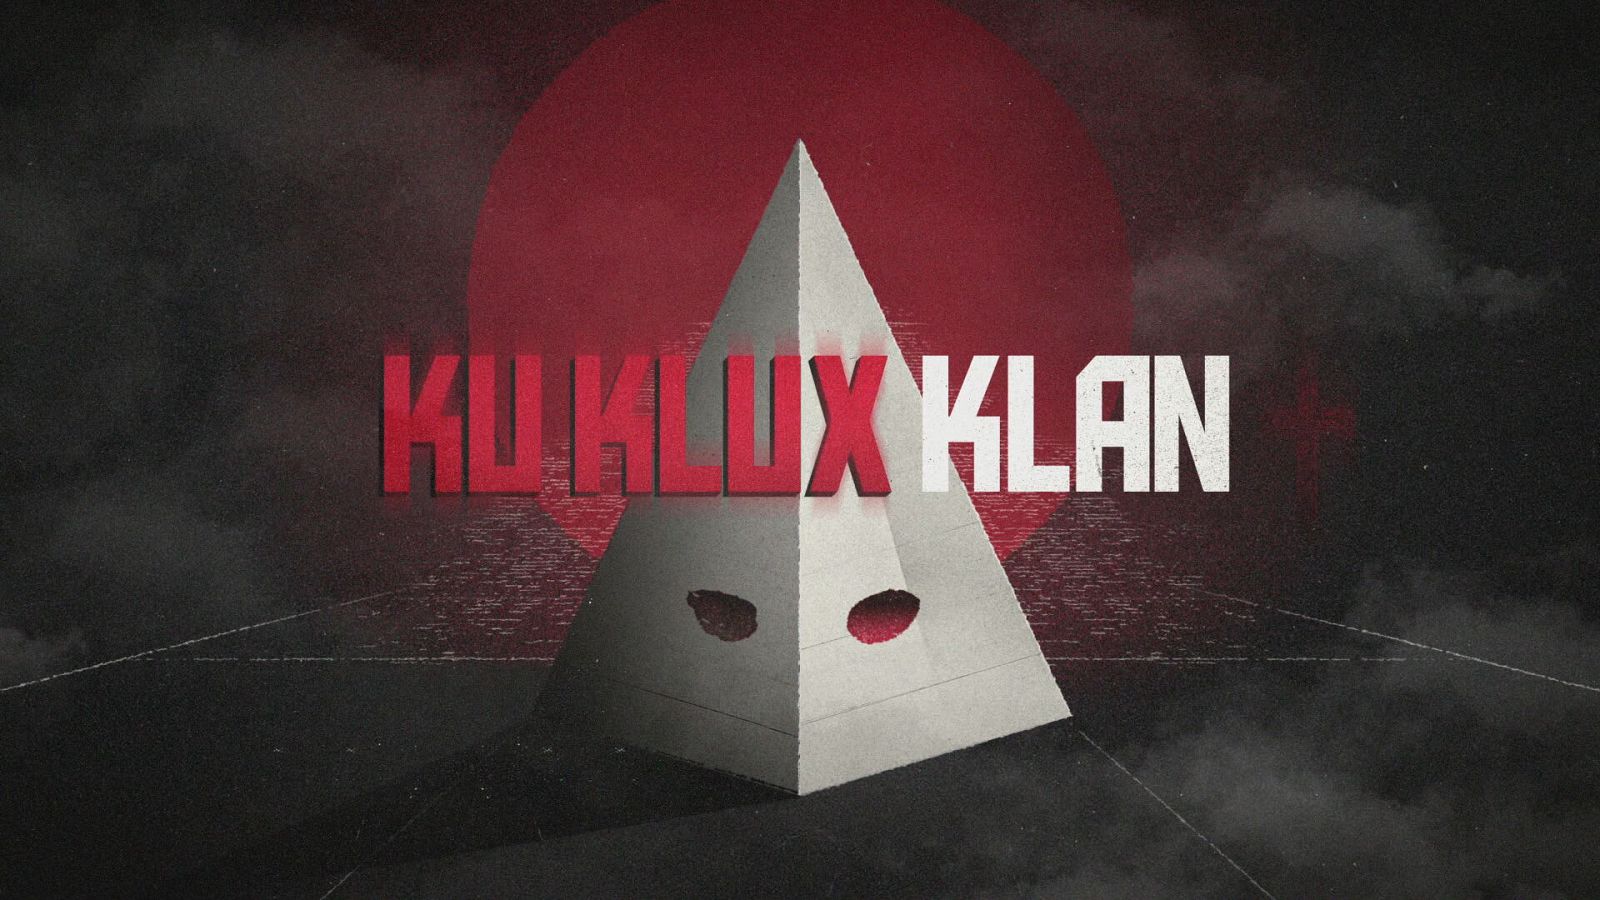 Imagen del rótulo del Ku Klux Klan